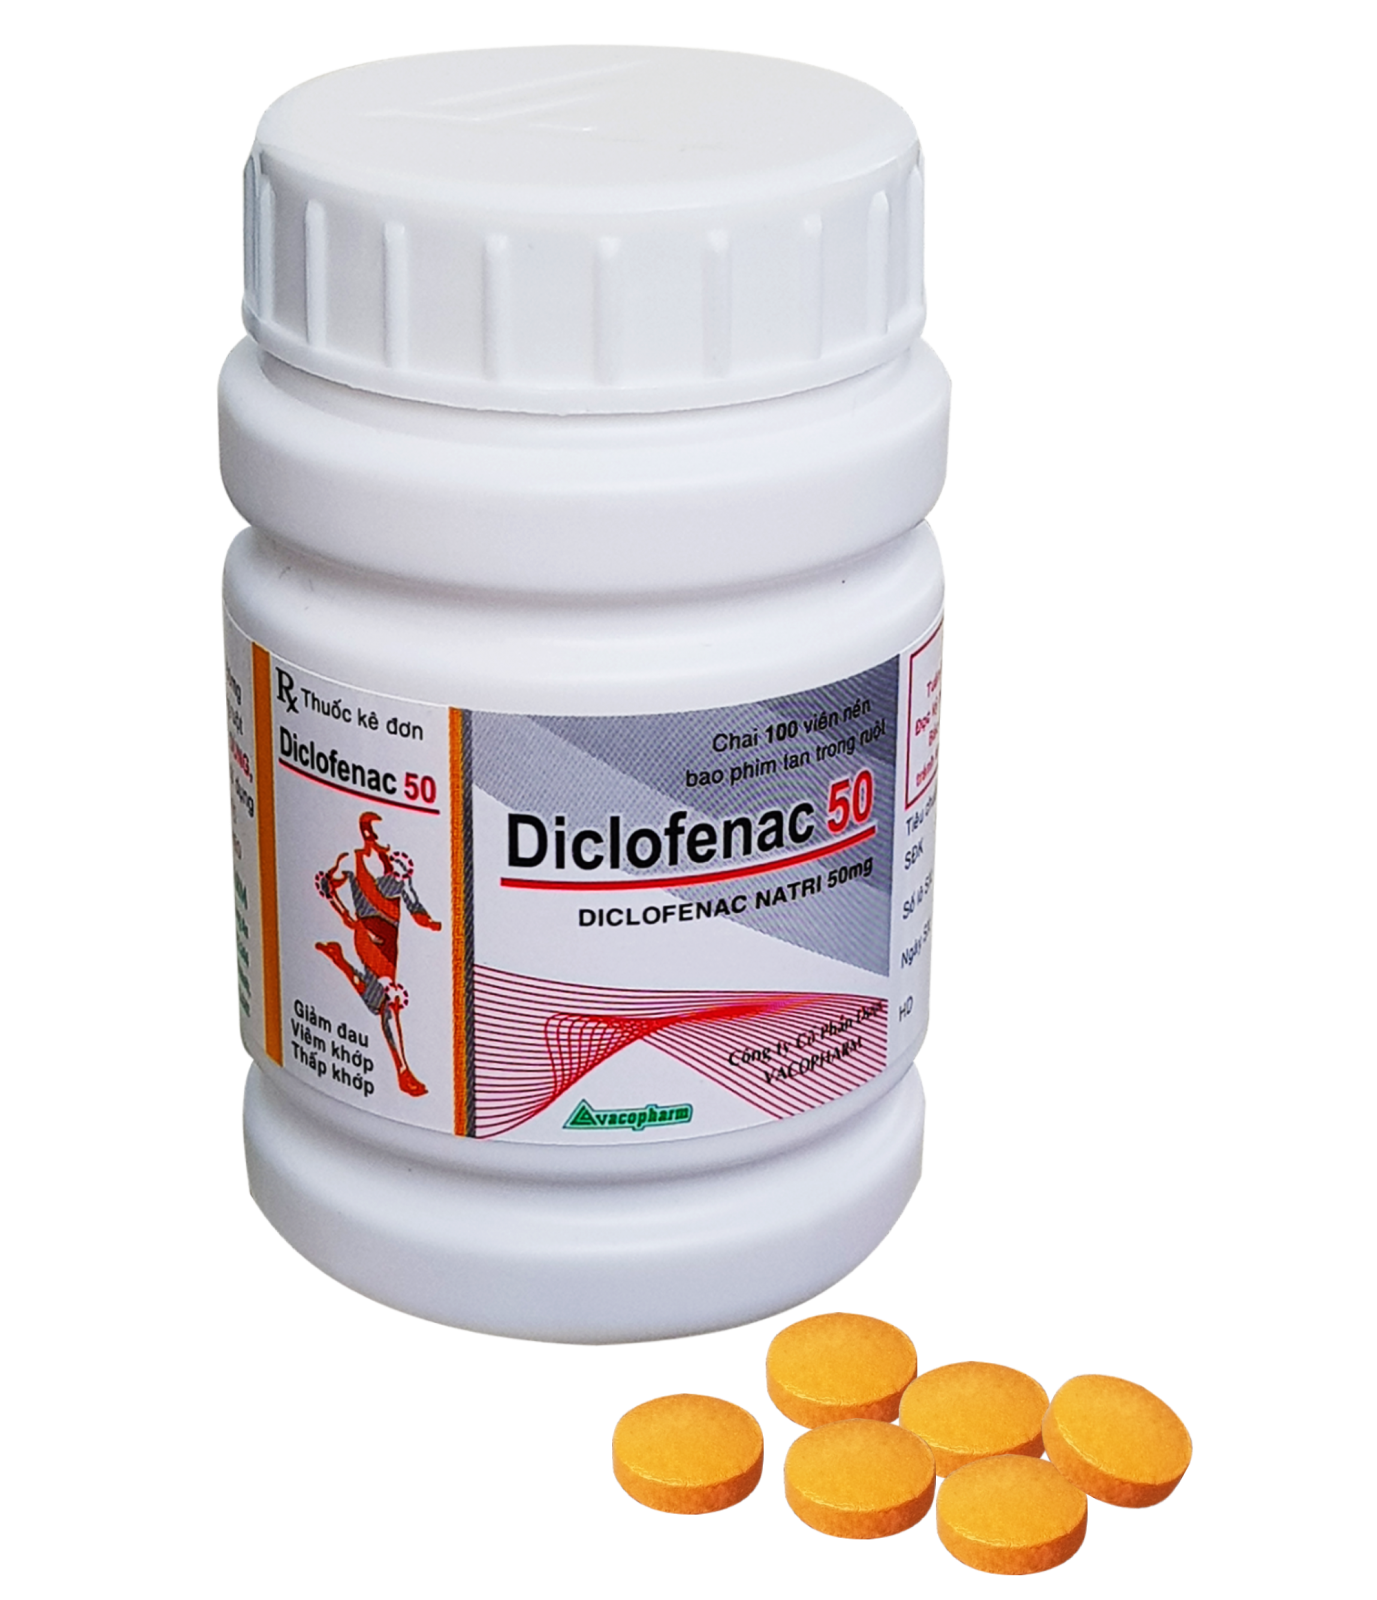 Thuốc diclofenac natri 50mg có tác dụng điều trị những loại bệnh viêm khớp nào?